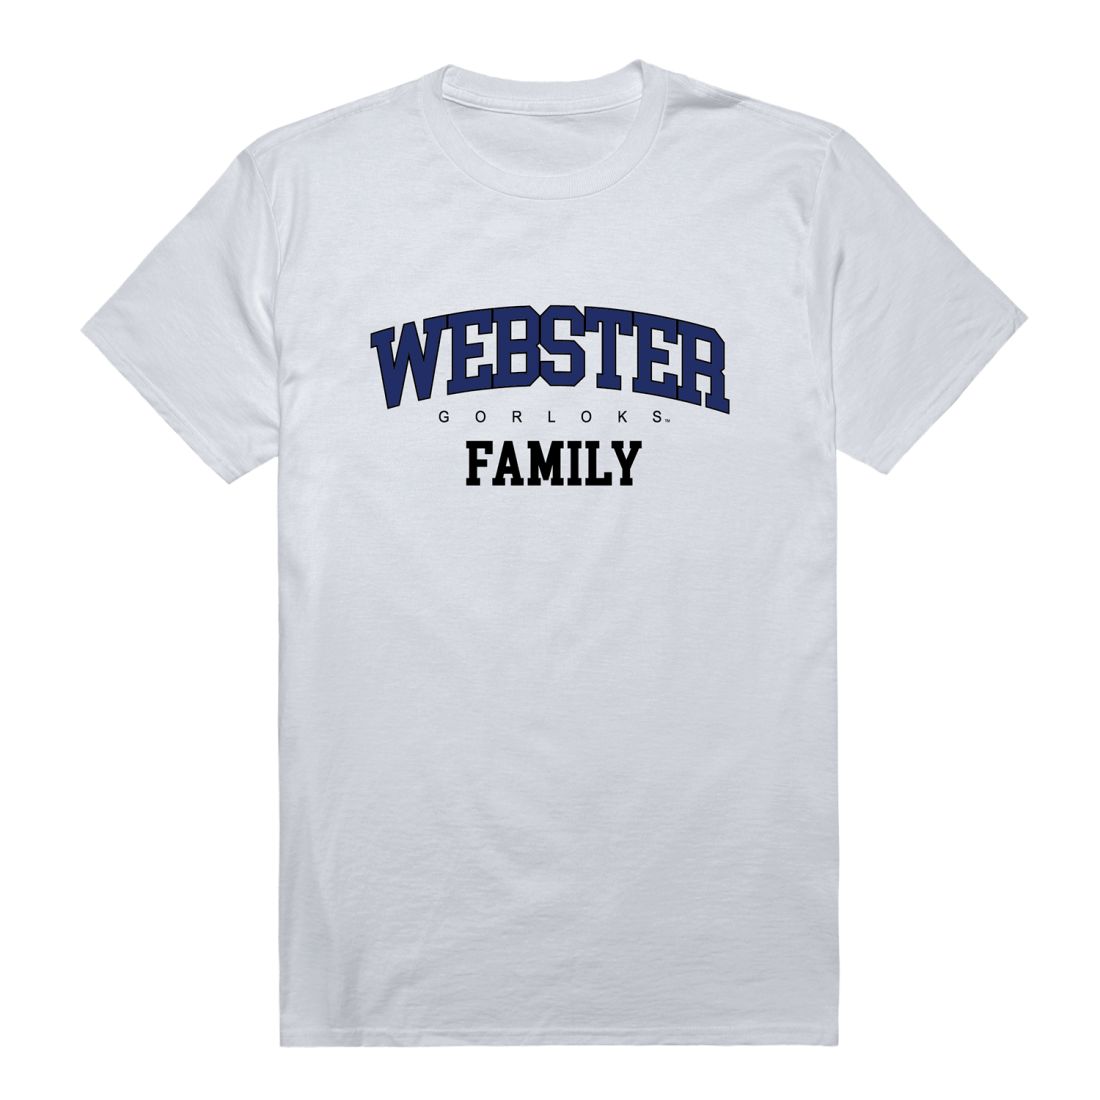 Webster University Gorlocks Family T-Shirt